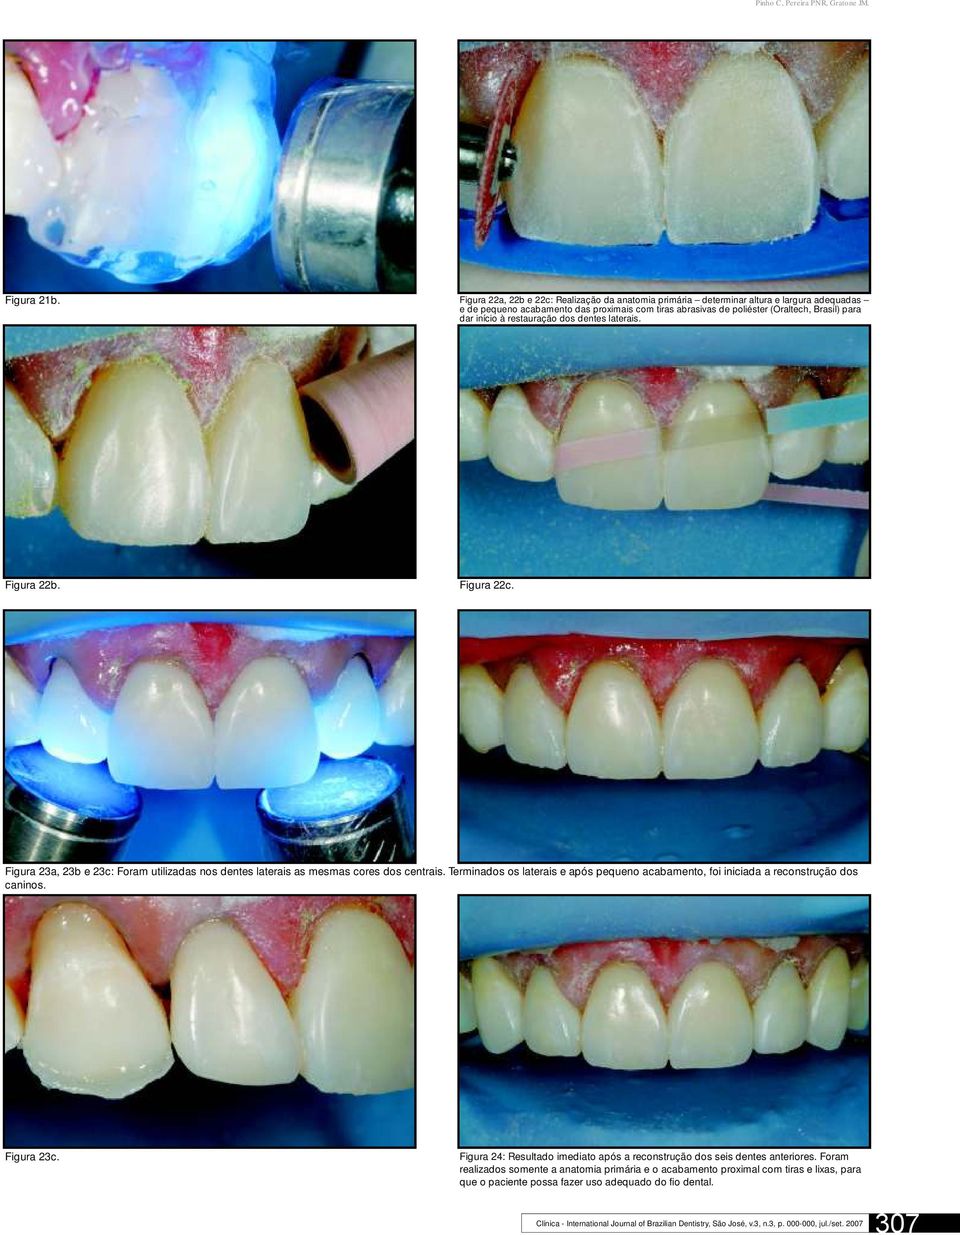 à restauração dos dentes laterais. Figura 22b. Figura 22c. Figura 23a, 23b e 23c: Foram utilizadas nos dentes laterais as mesmas cores dos centrais.